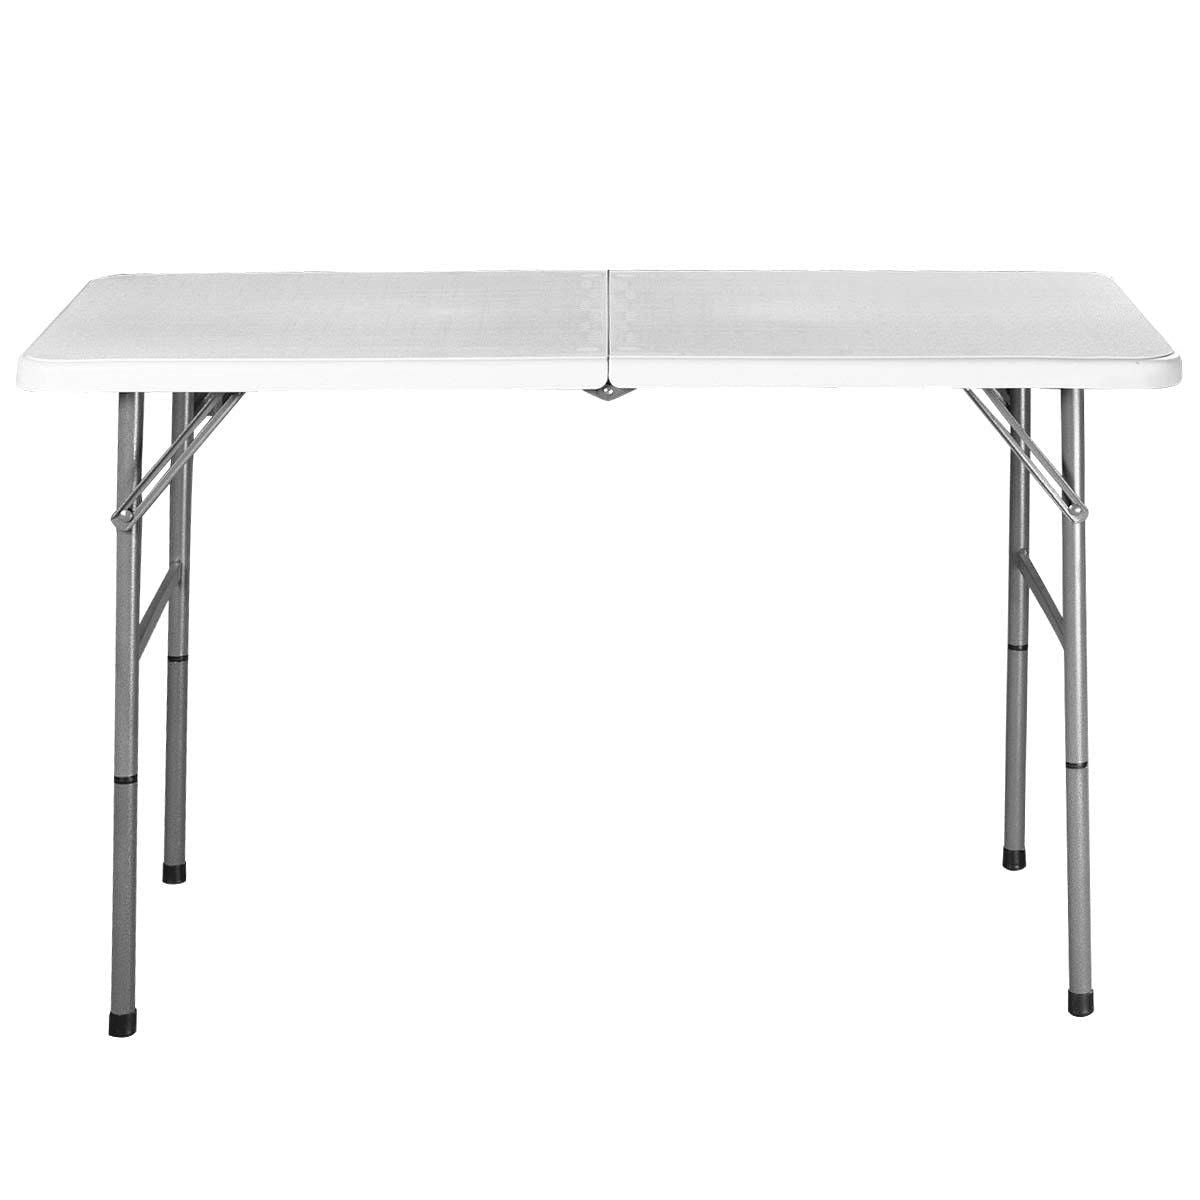 White Plastic Folding Table